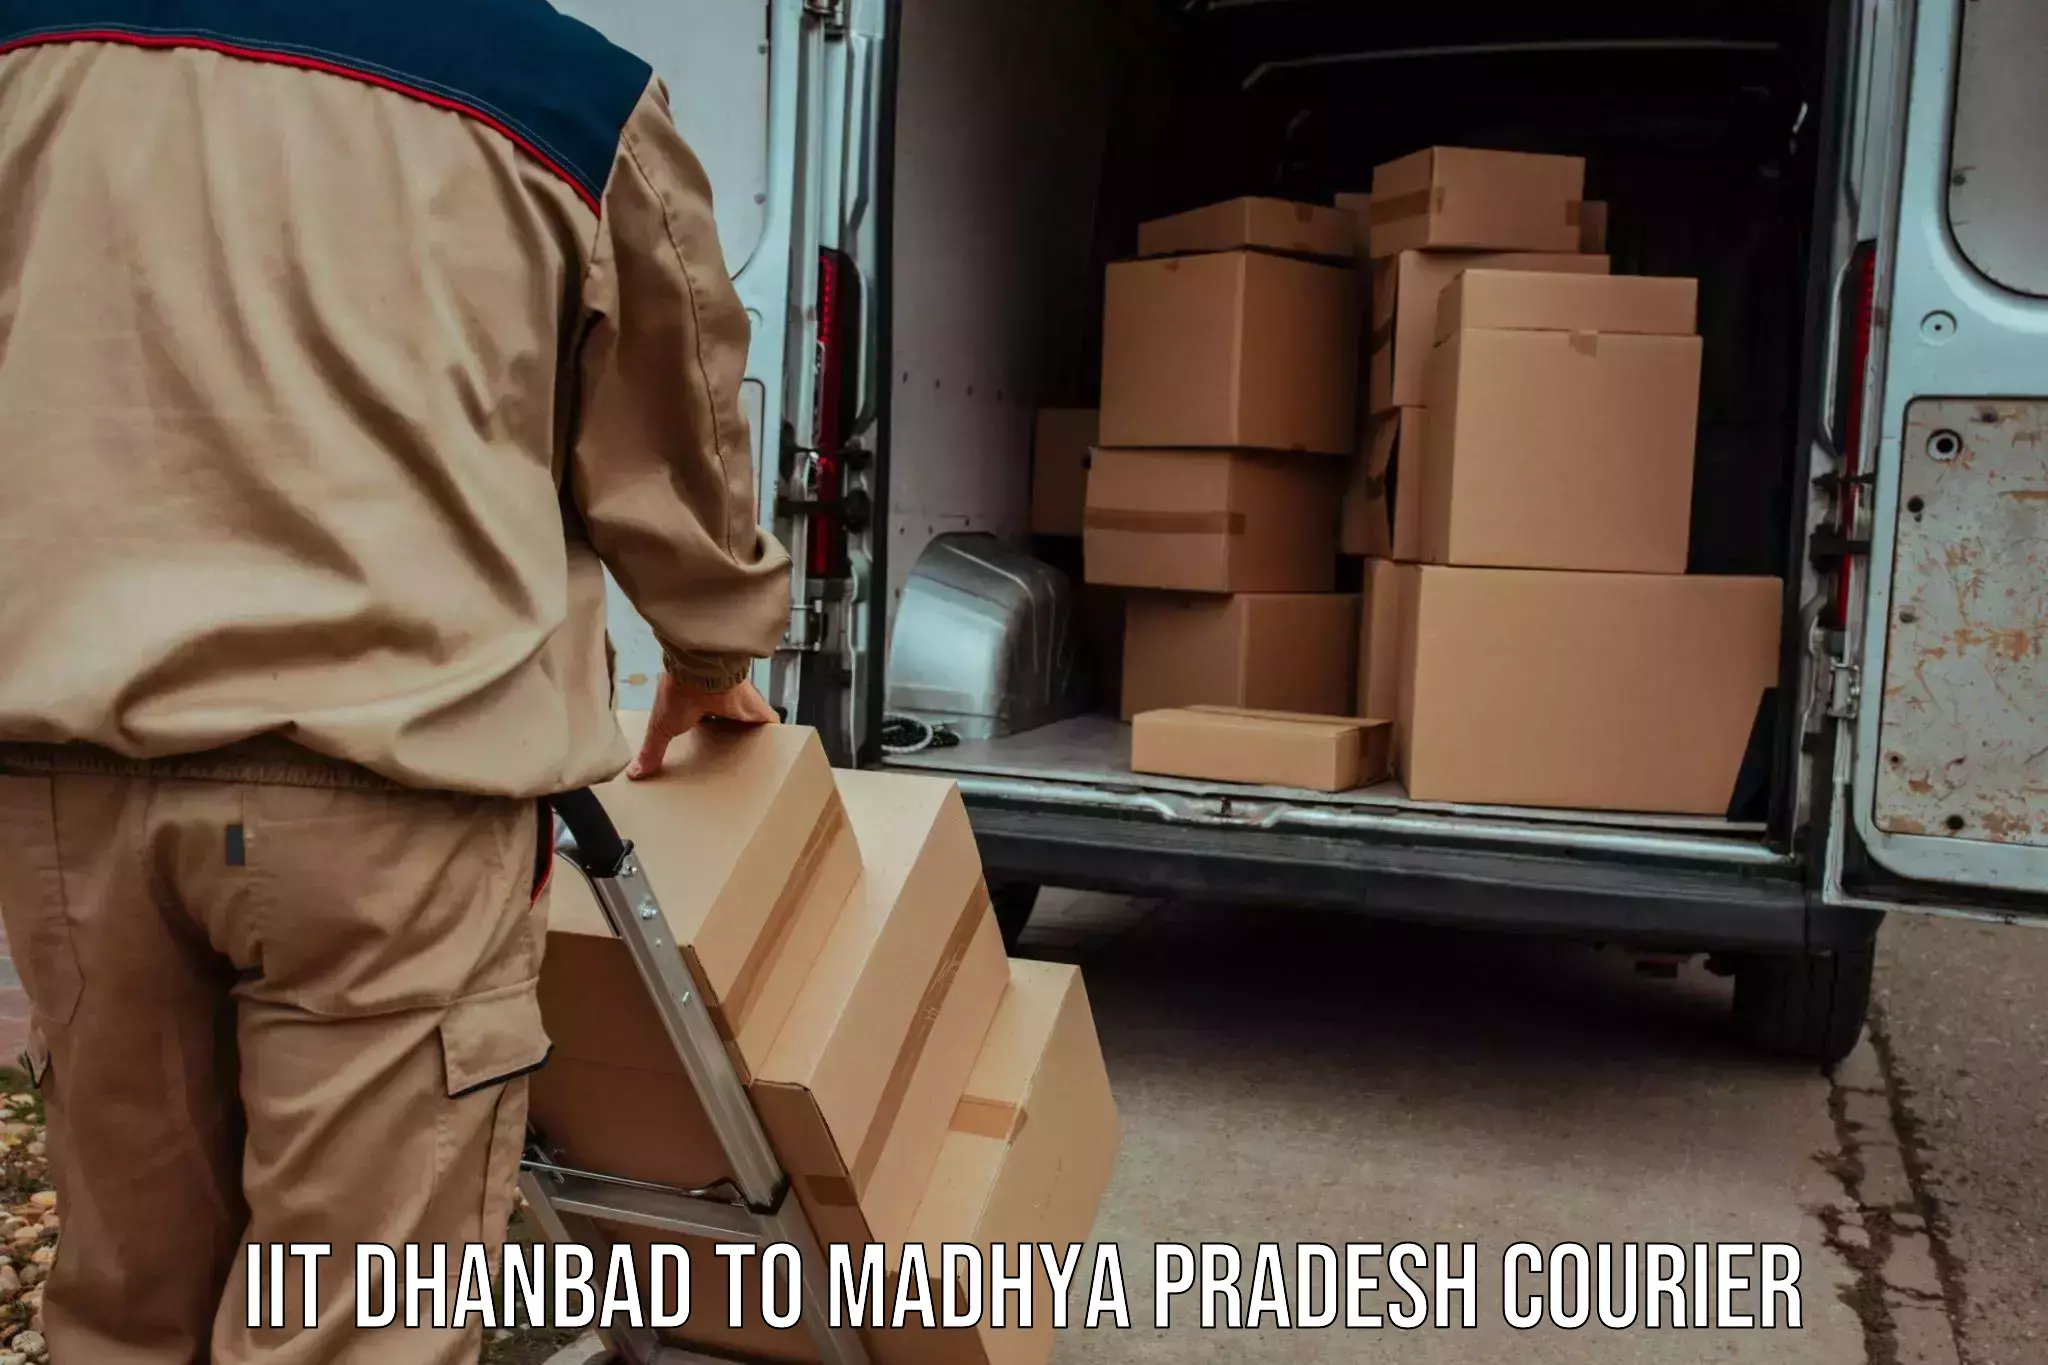 Efficient parcel service IIT Dhanbad to Datia